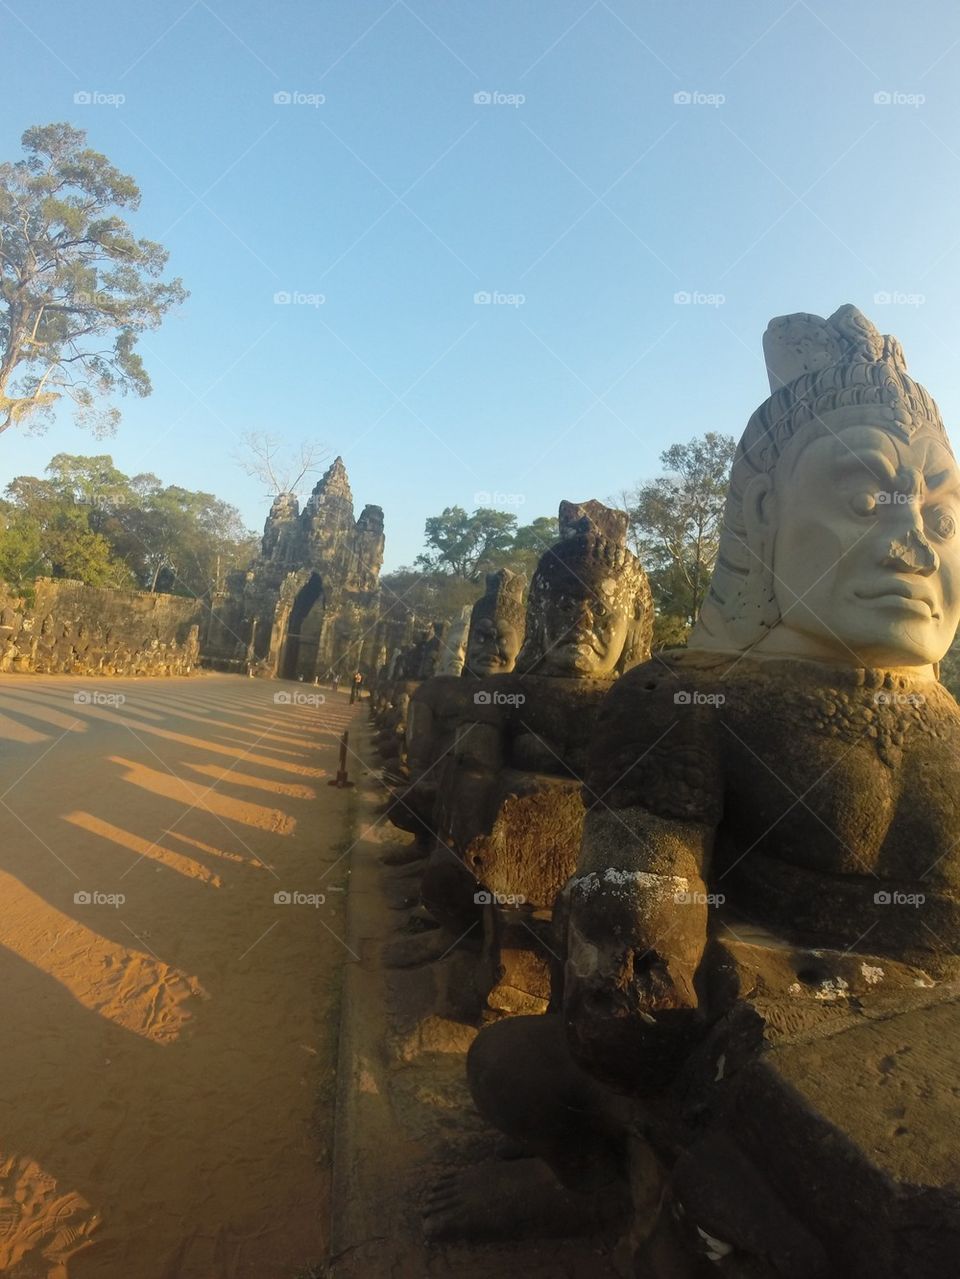 Angkor, Cambodia 